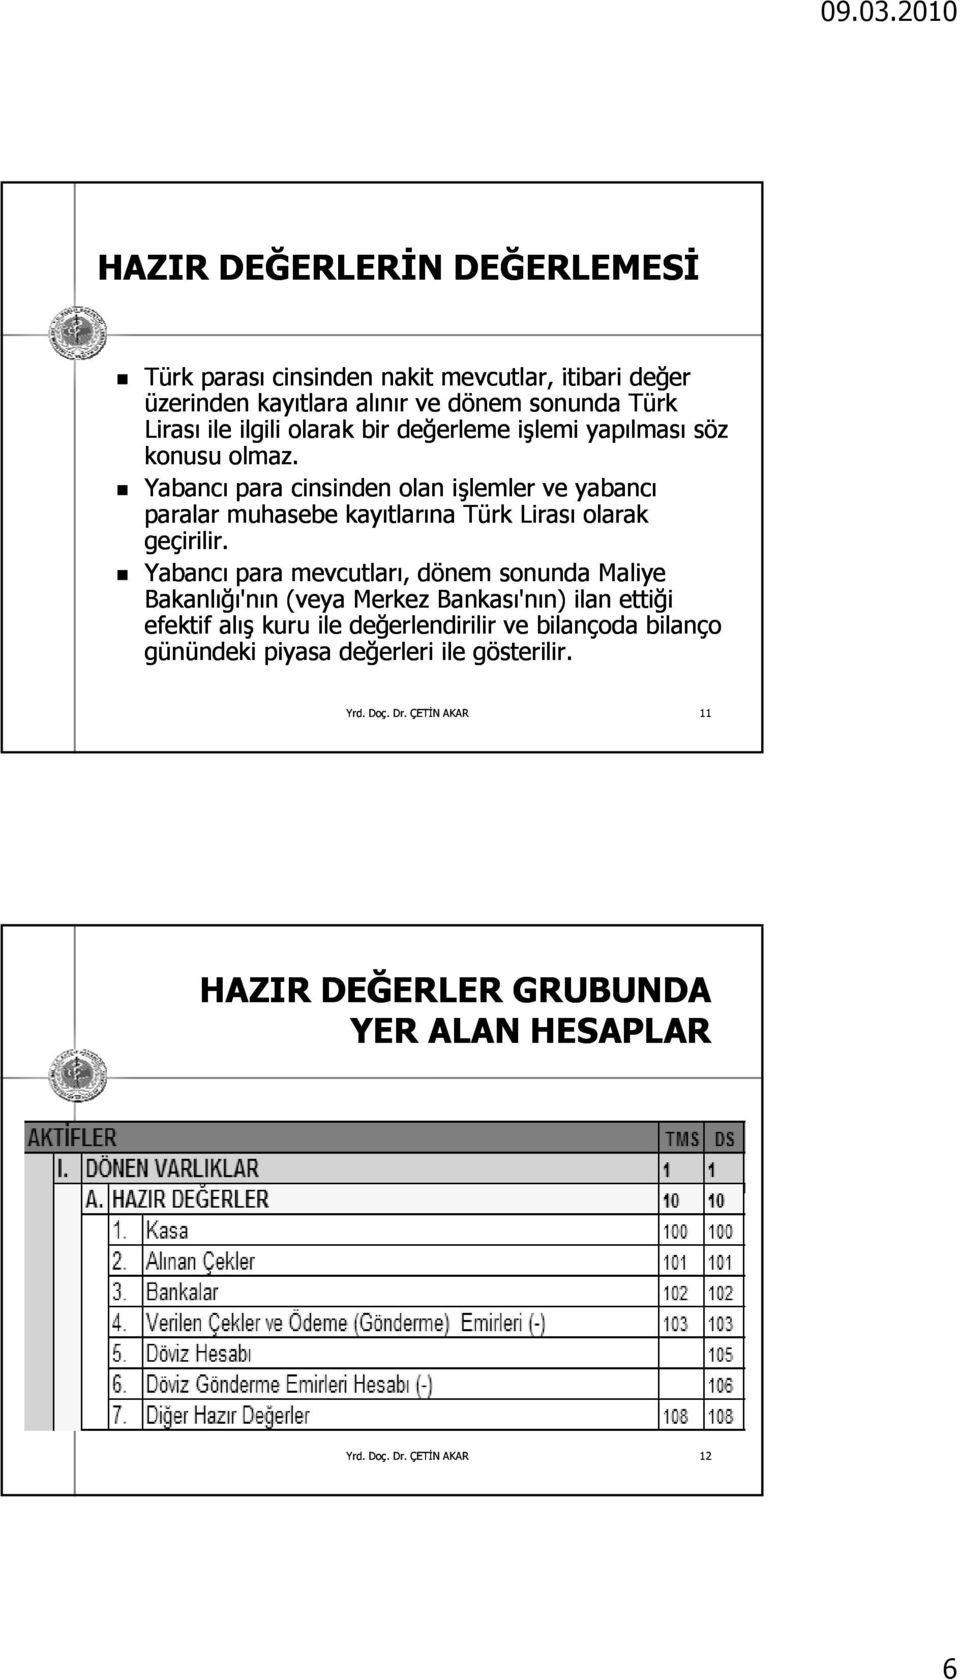 Yabancı para cinsinden olan işlemler ve yabancı paralar muhasebe kayıtlarına Türk Lirası olarak geçirilir.